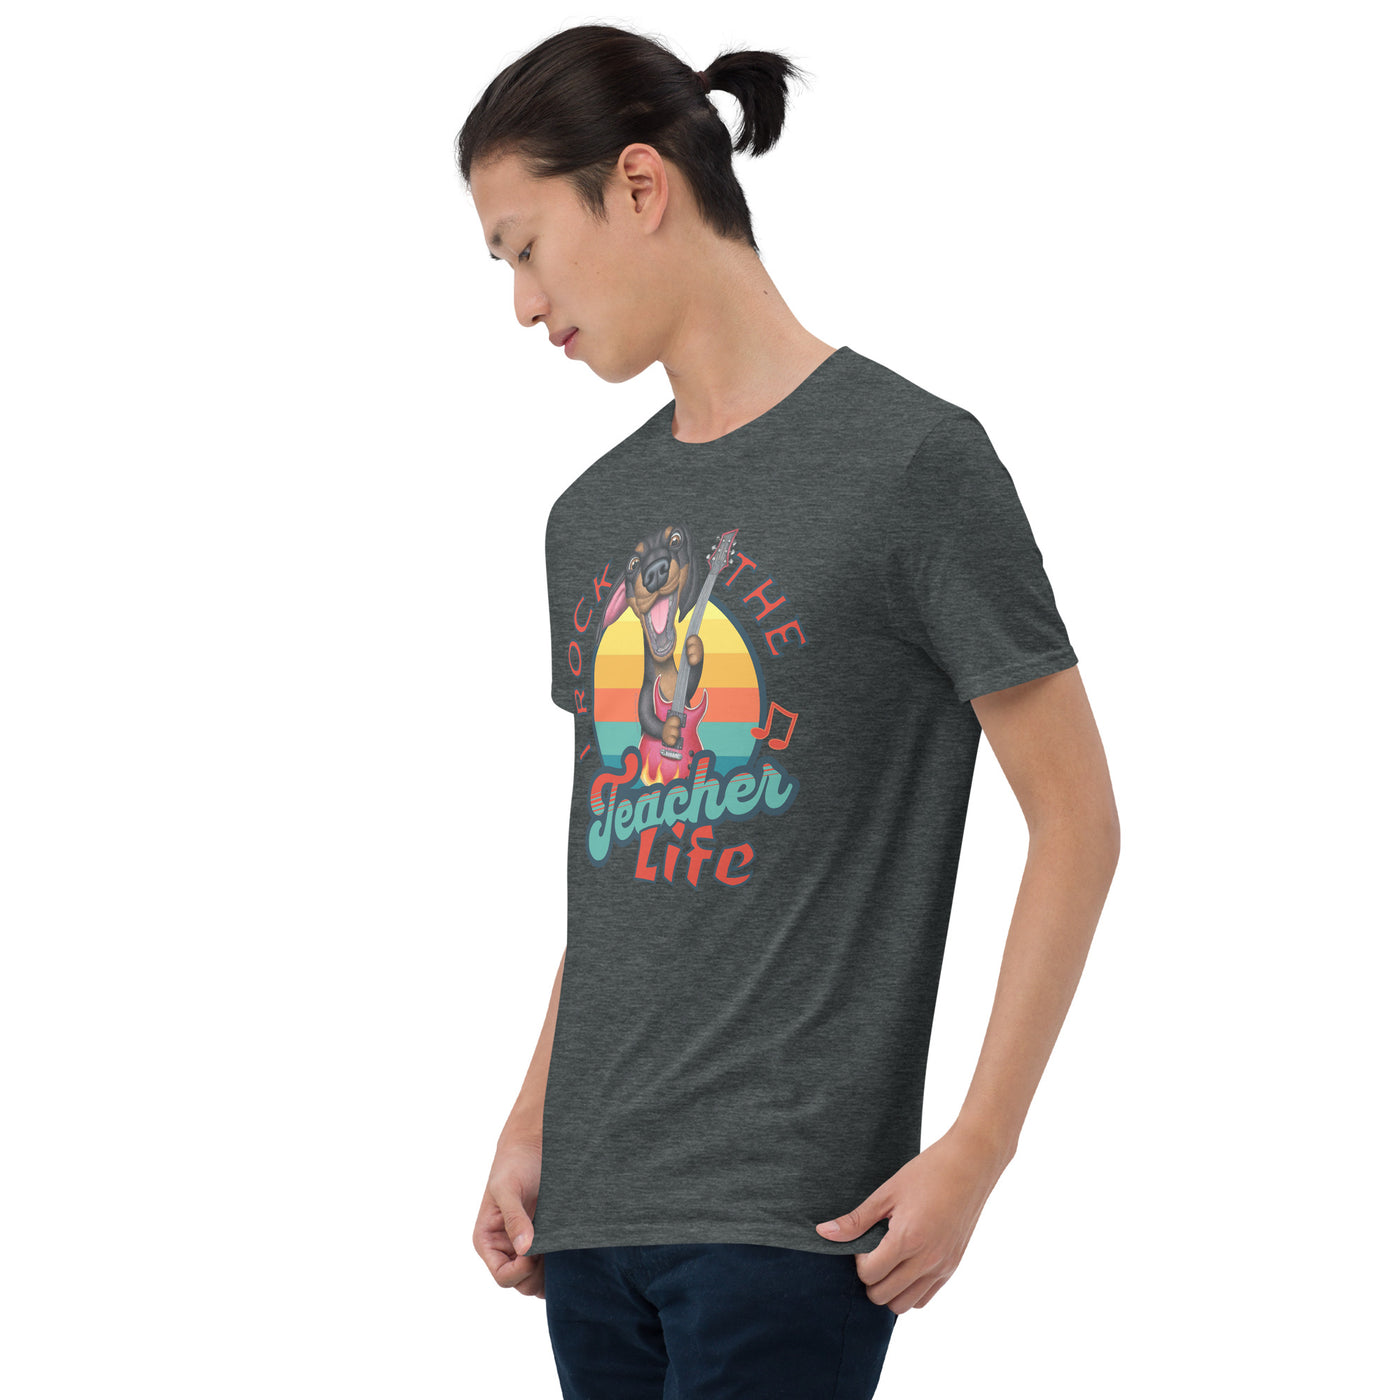 Cute Classroom tee for the teacher life on I Rock the Teacher Life Unisex T-Shirt